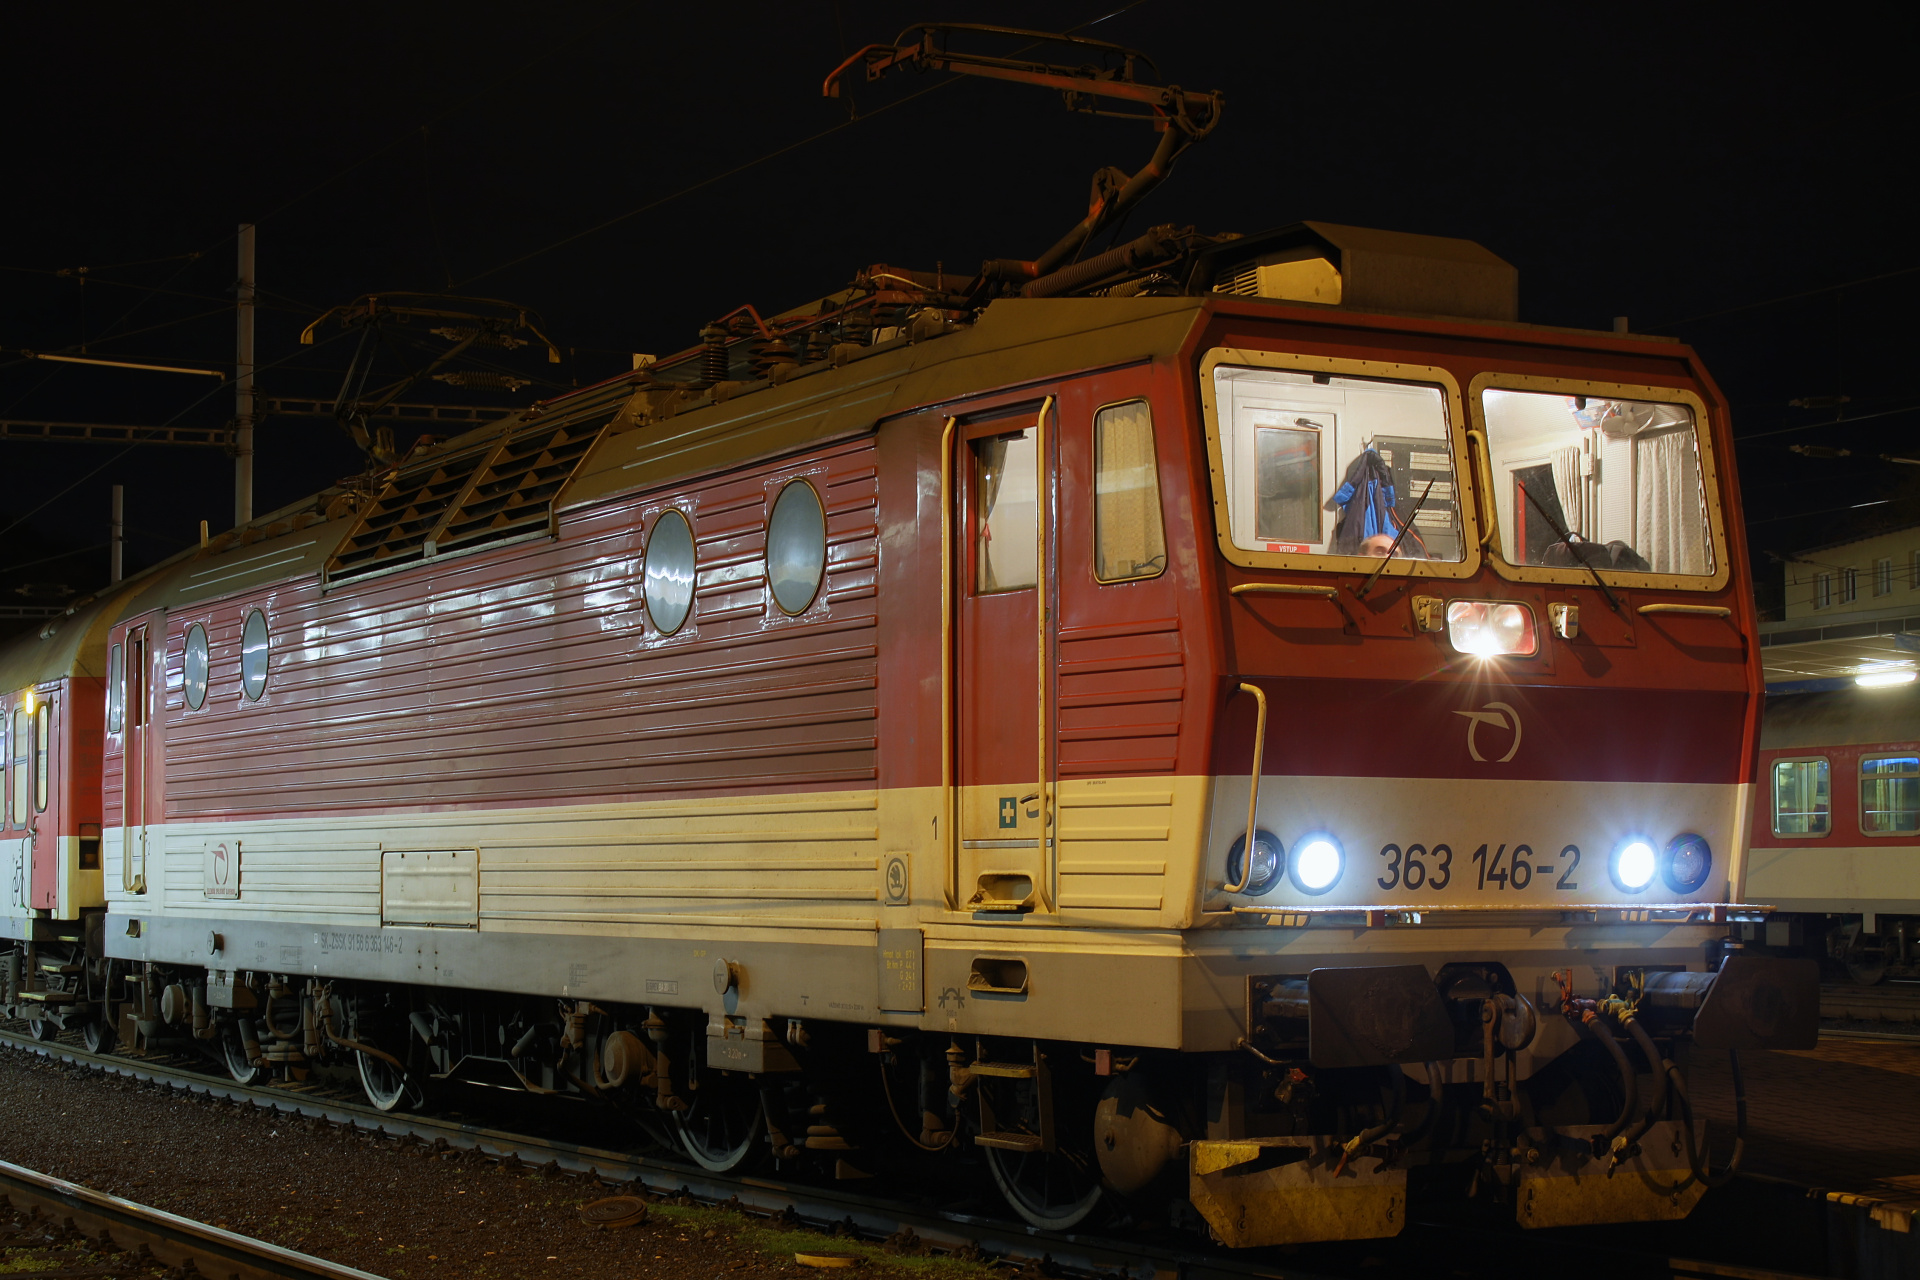 Škoda 69E 363 146-2 (Podróże » Bratysława » Pojazdy » Pociągi i lokomotywy)